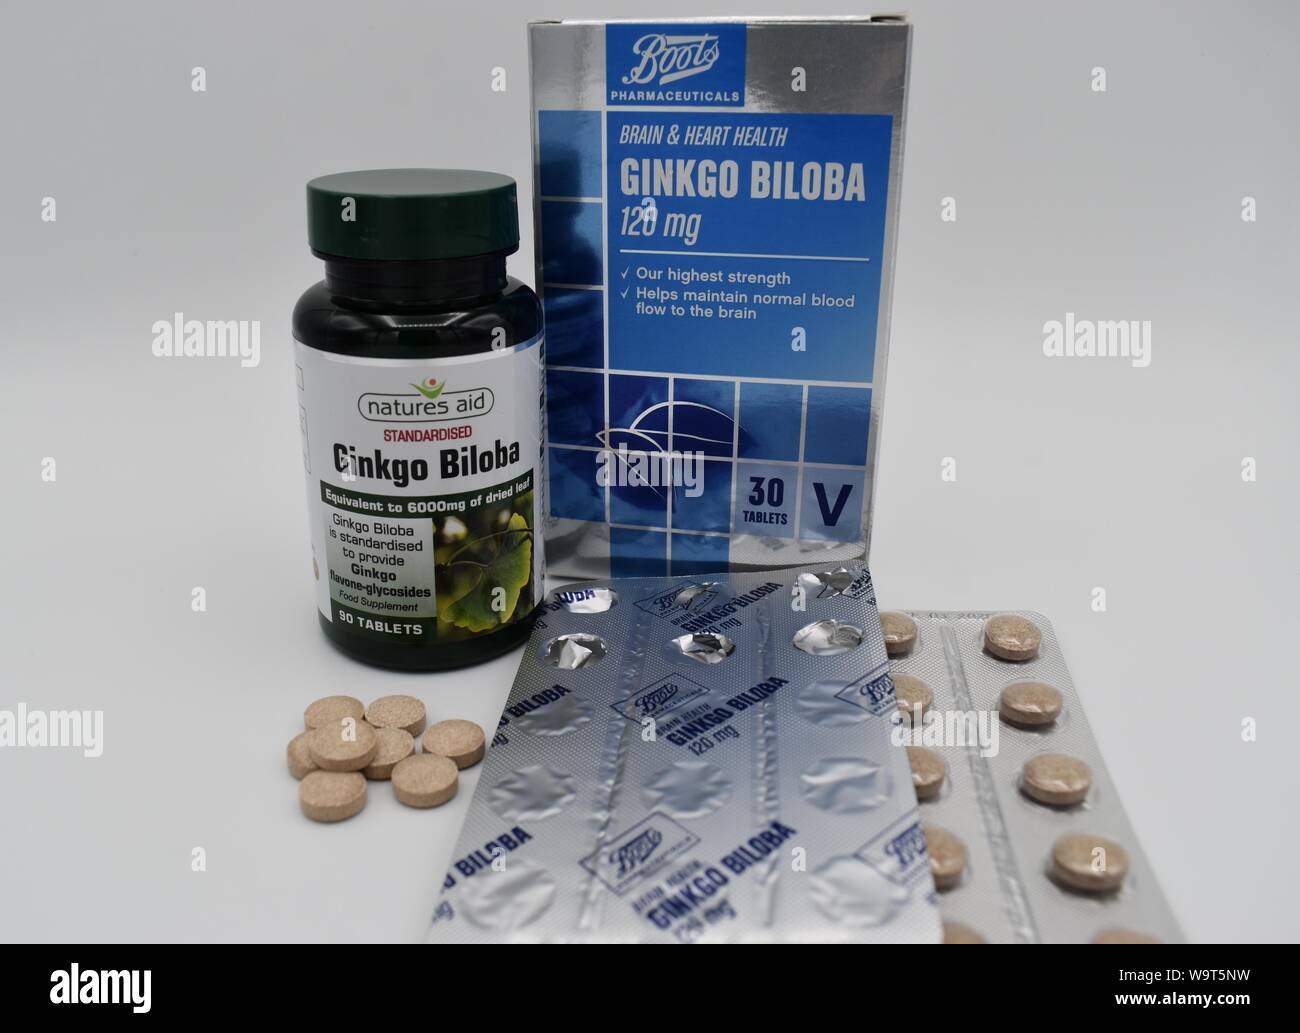 Due marche di Ginkgo Biloba - un supplemento dietetico spesso venduti come benefici per la funzione cognitiva, apparentemente senza prove scientifiche. Foto Stock